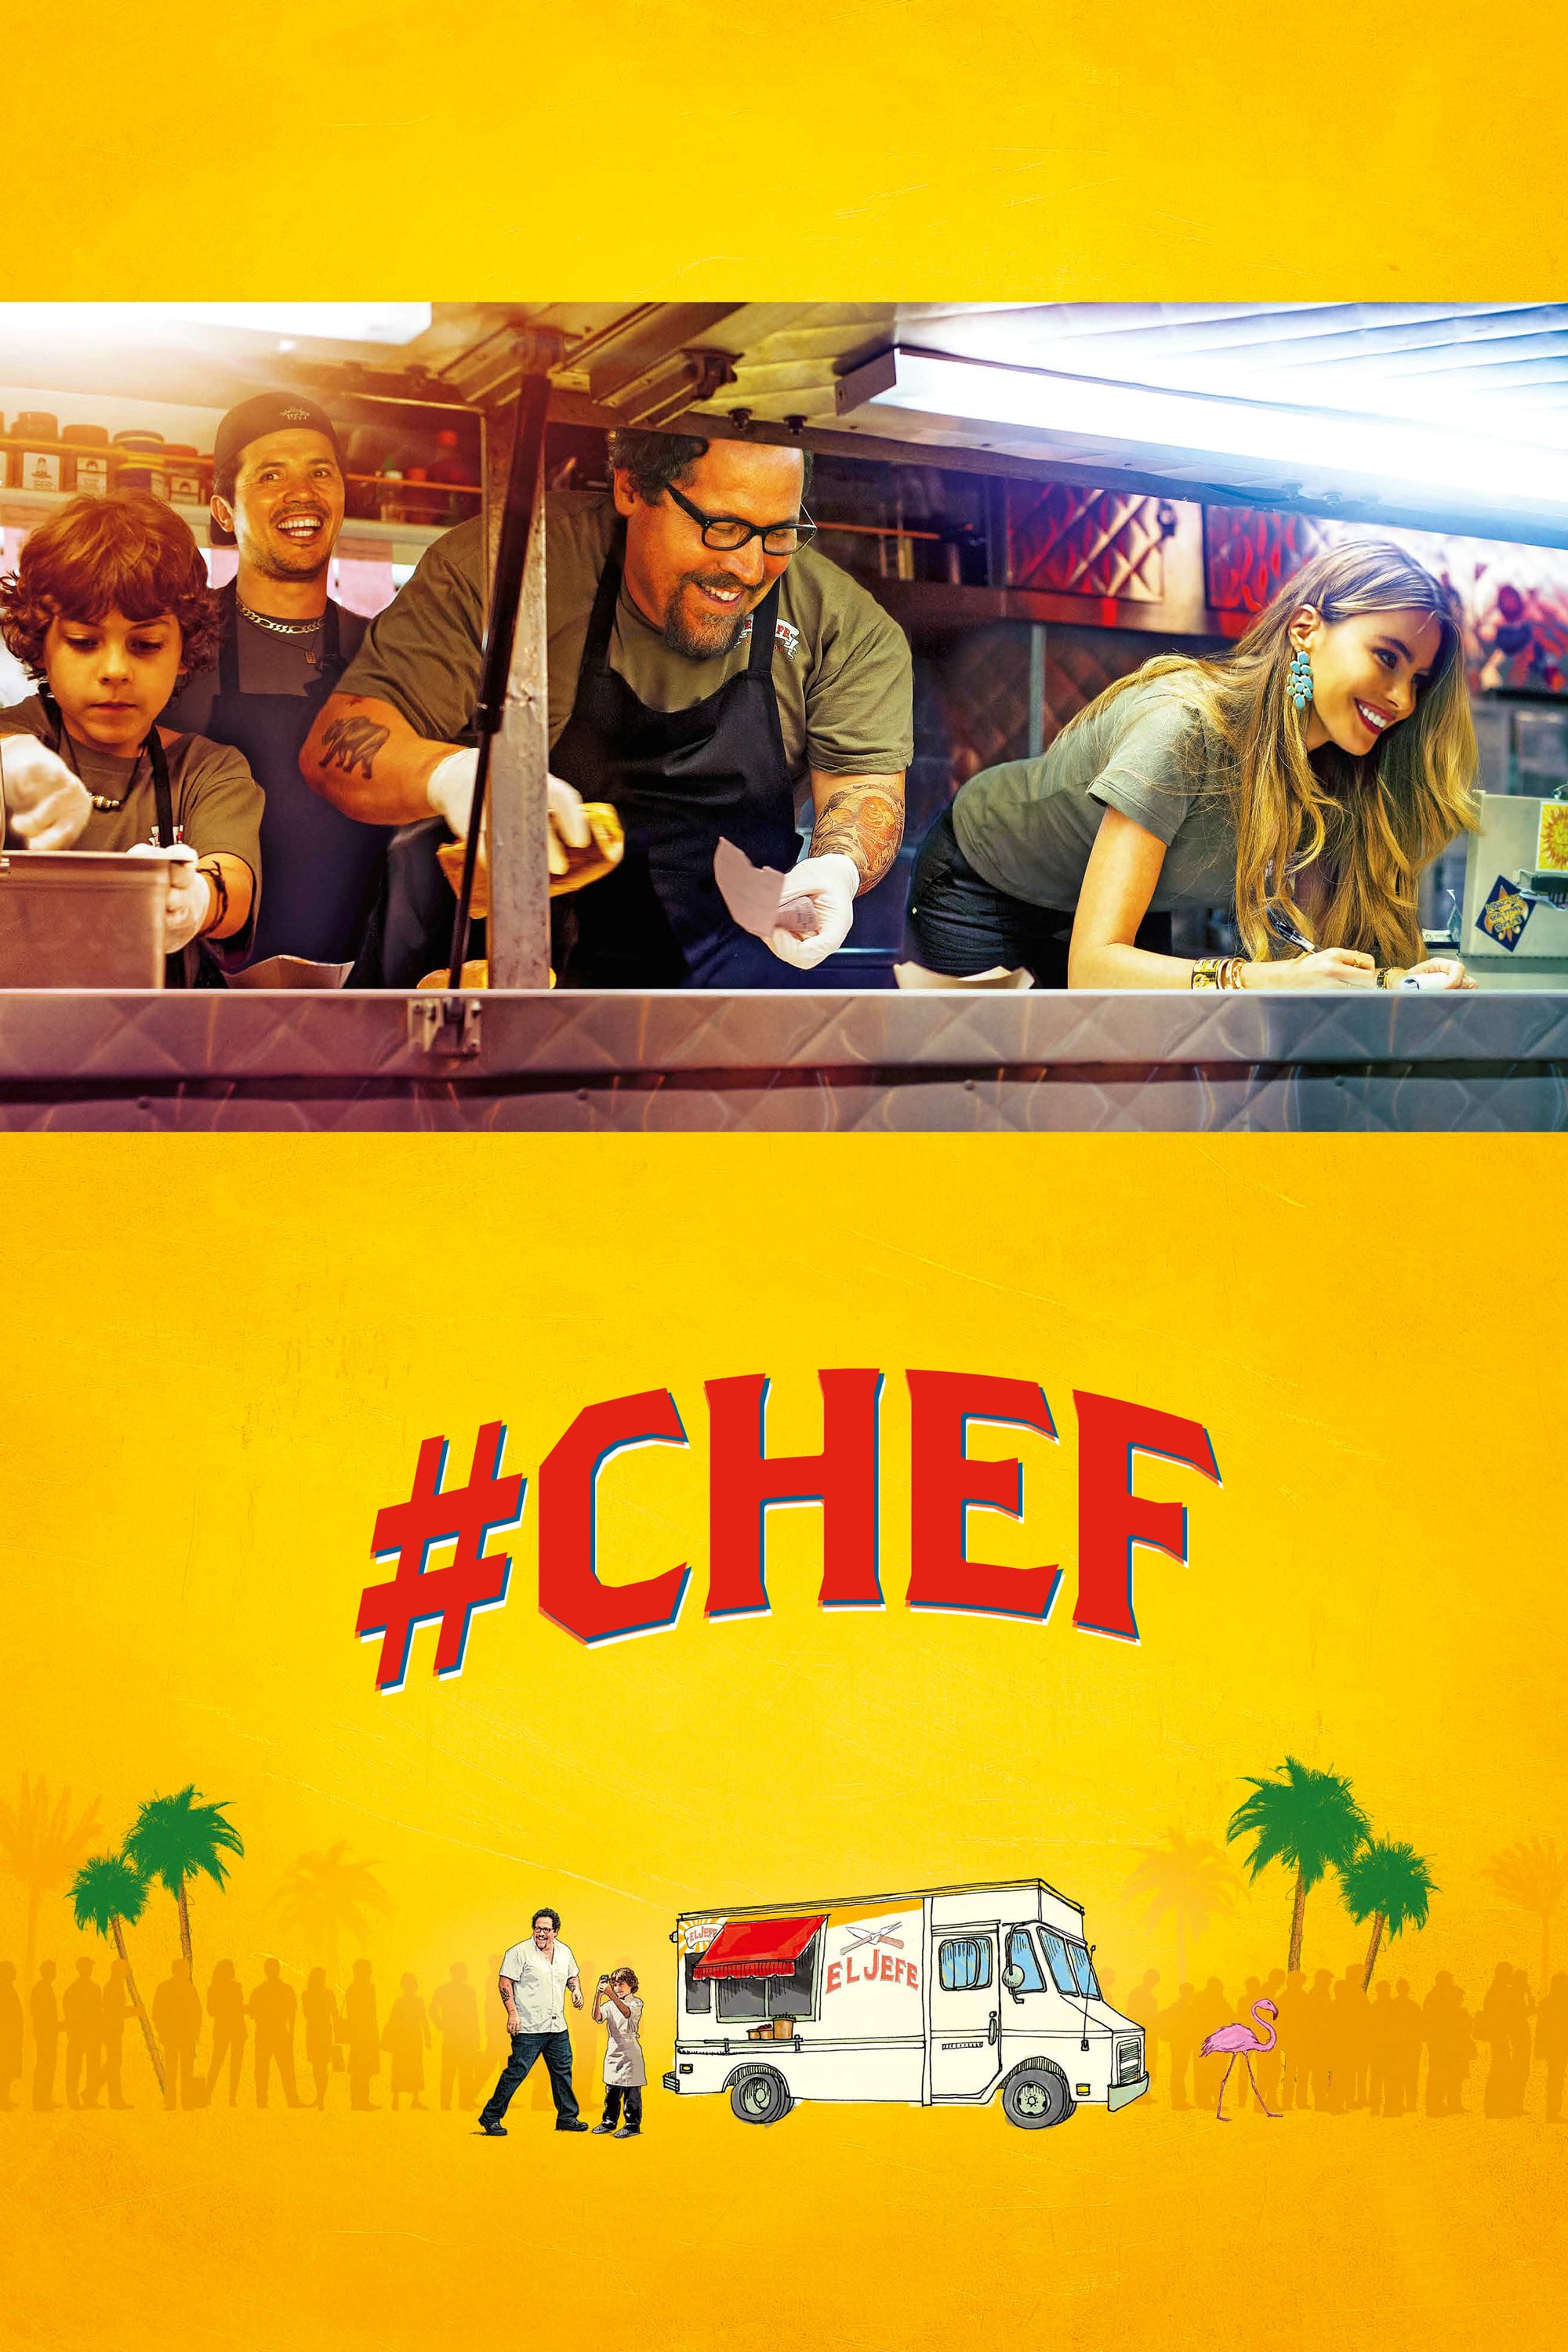 Affiche du film "#Chef"